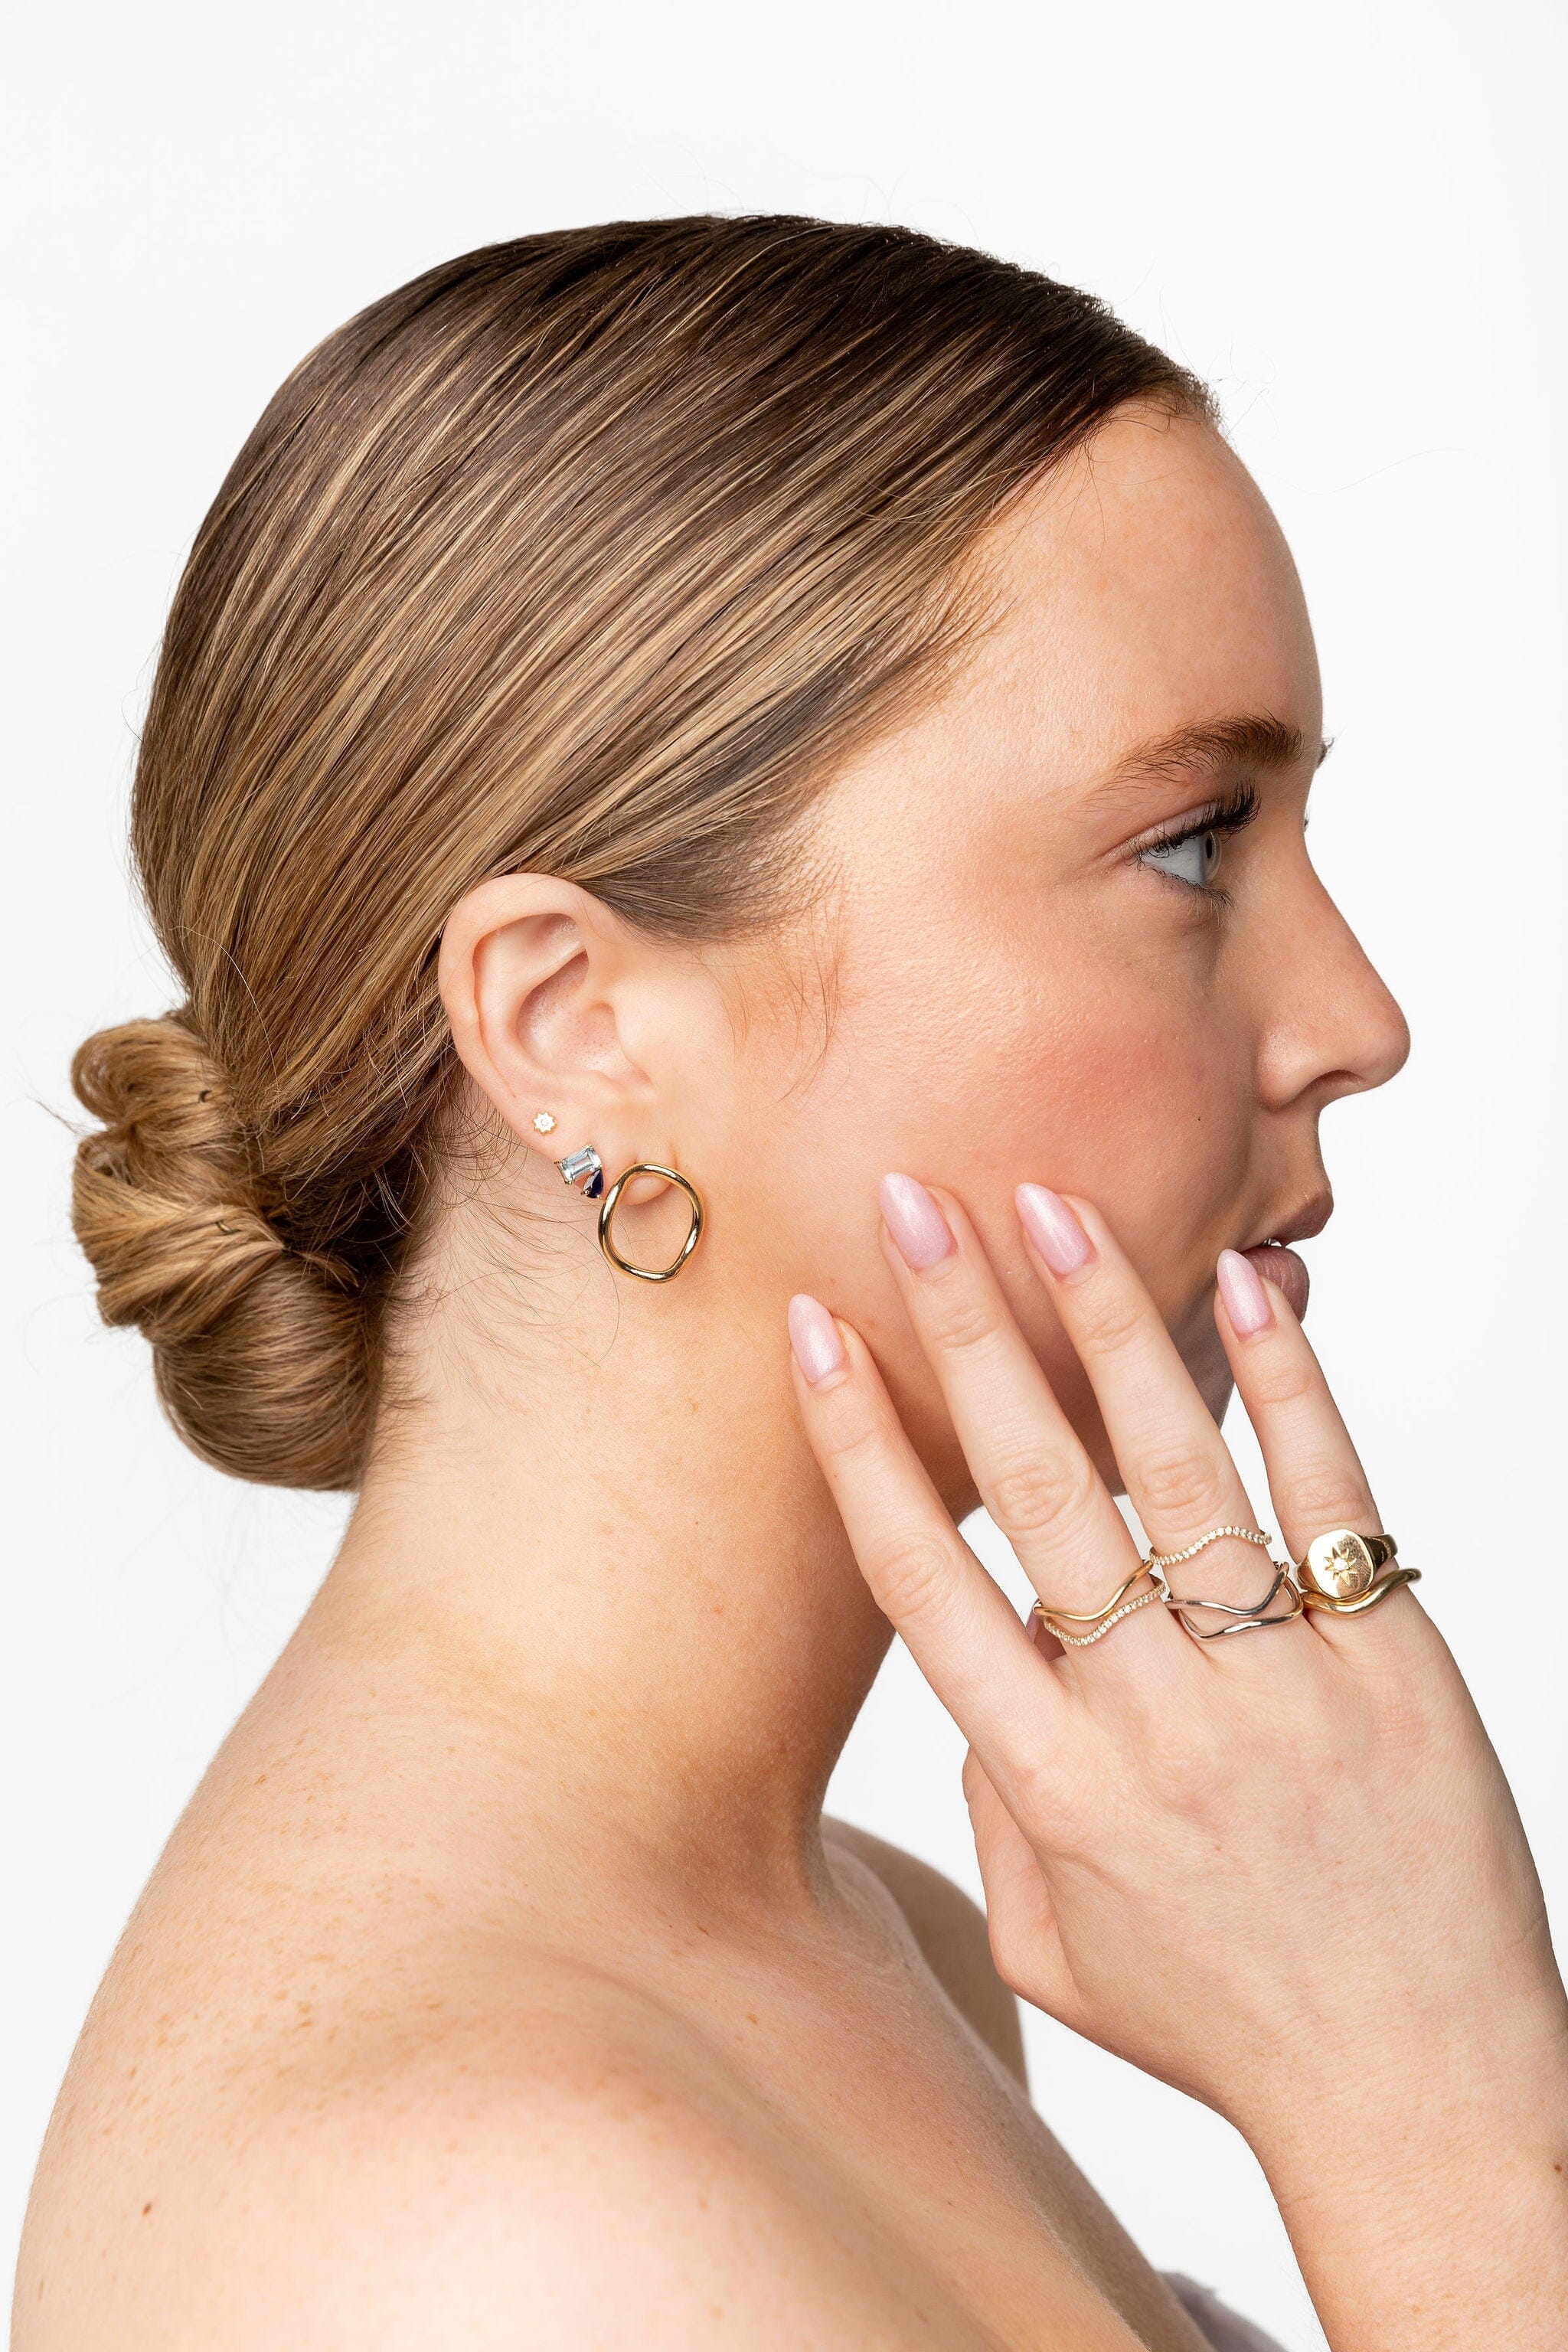 Blue Raspberry Jollie Studs Earrings - BONDEYE JEWELRY ®